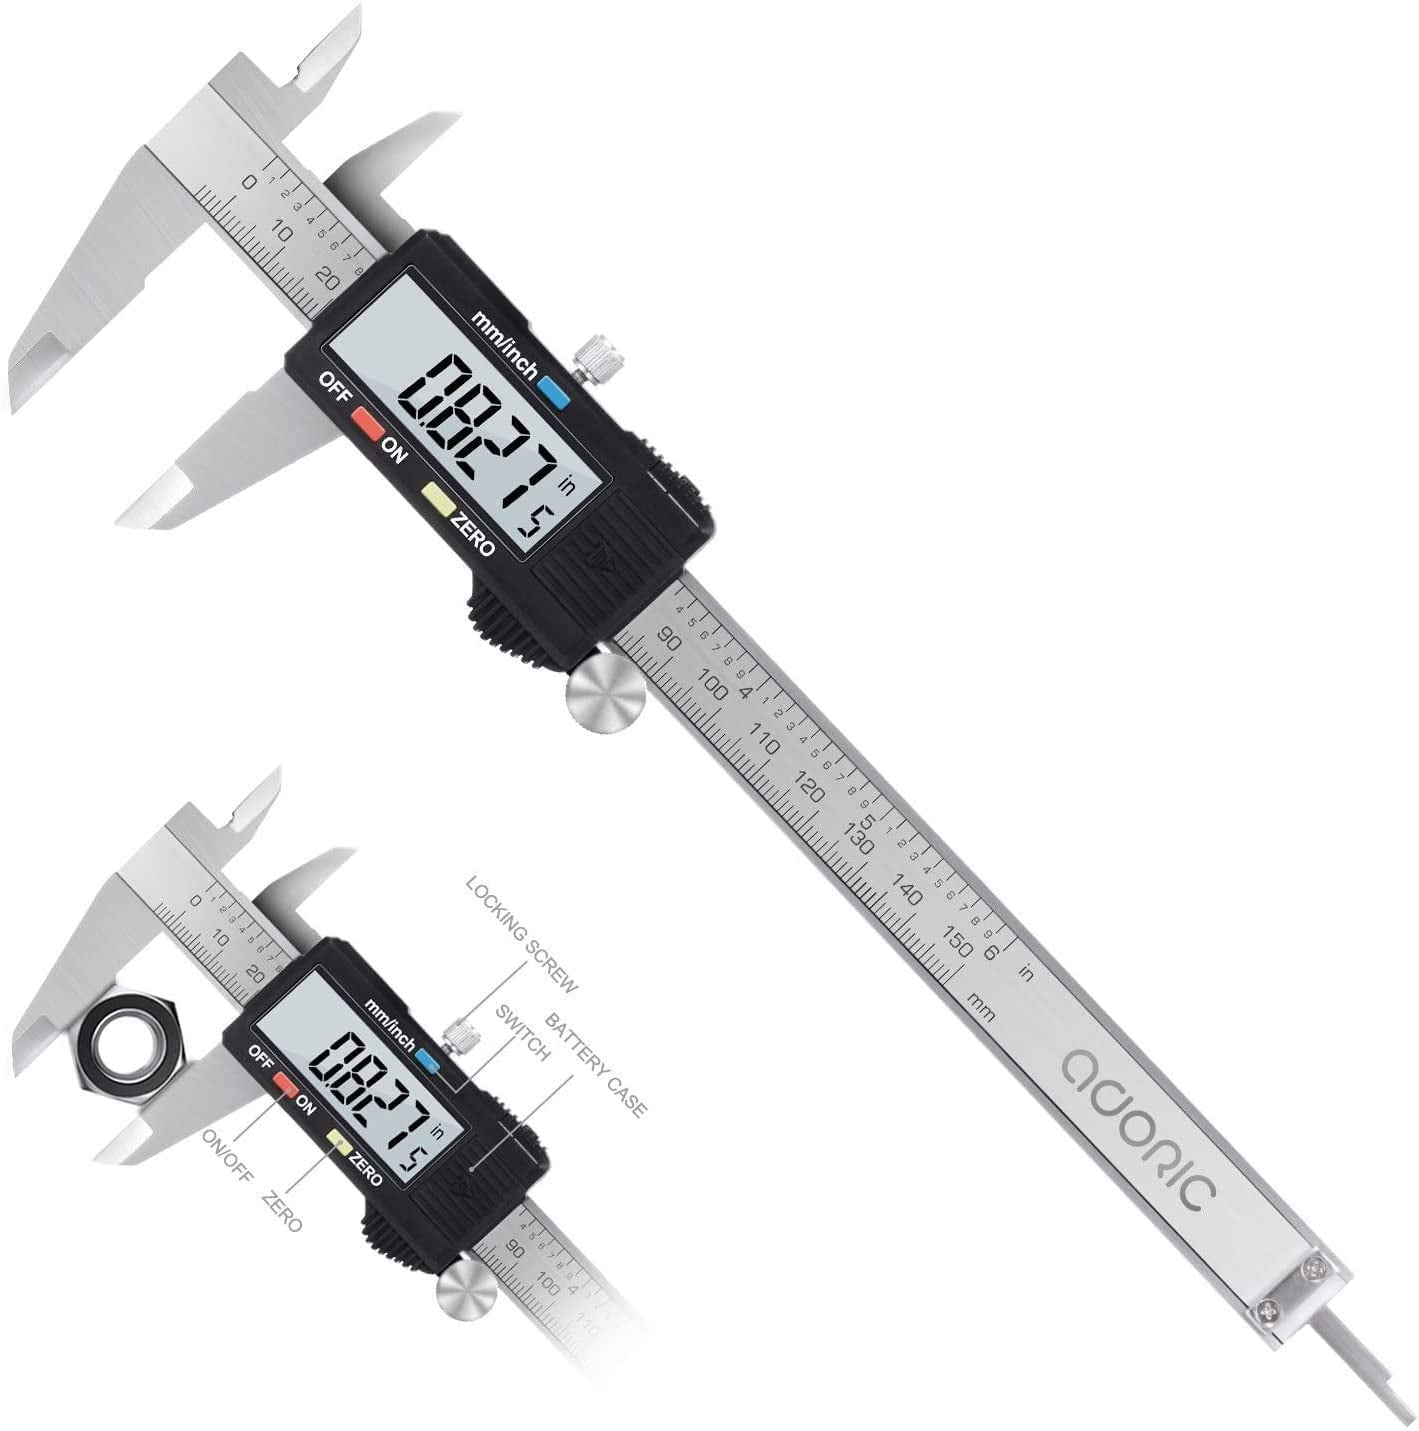 LCD Electronic Caliper Vernier Adoric 0-6" Micrometer Gauge Meter Ruler Kit 